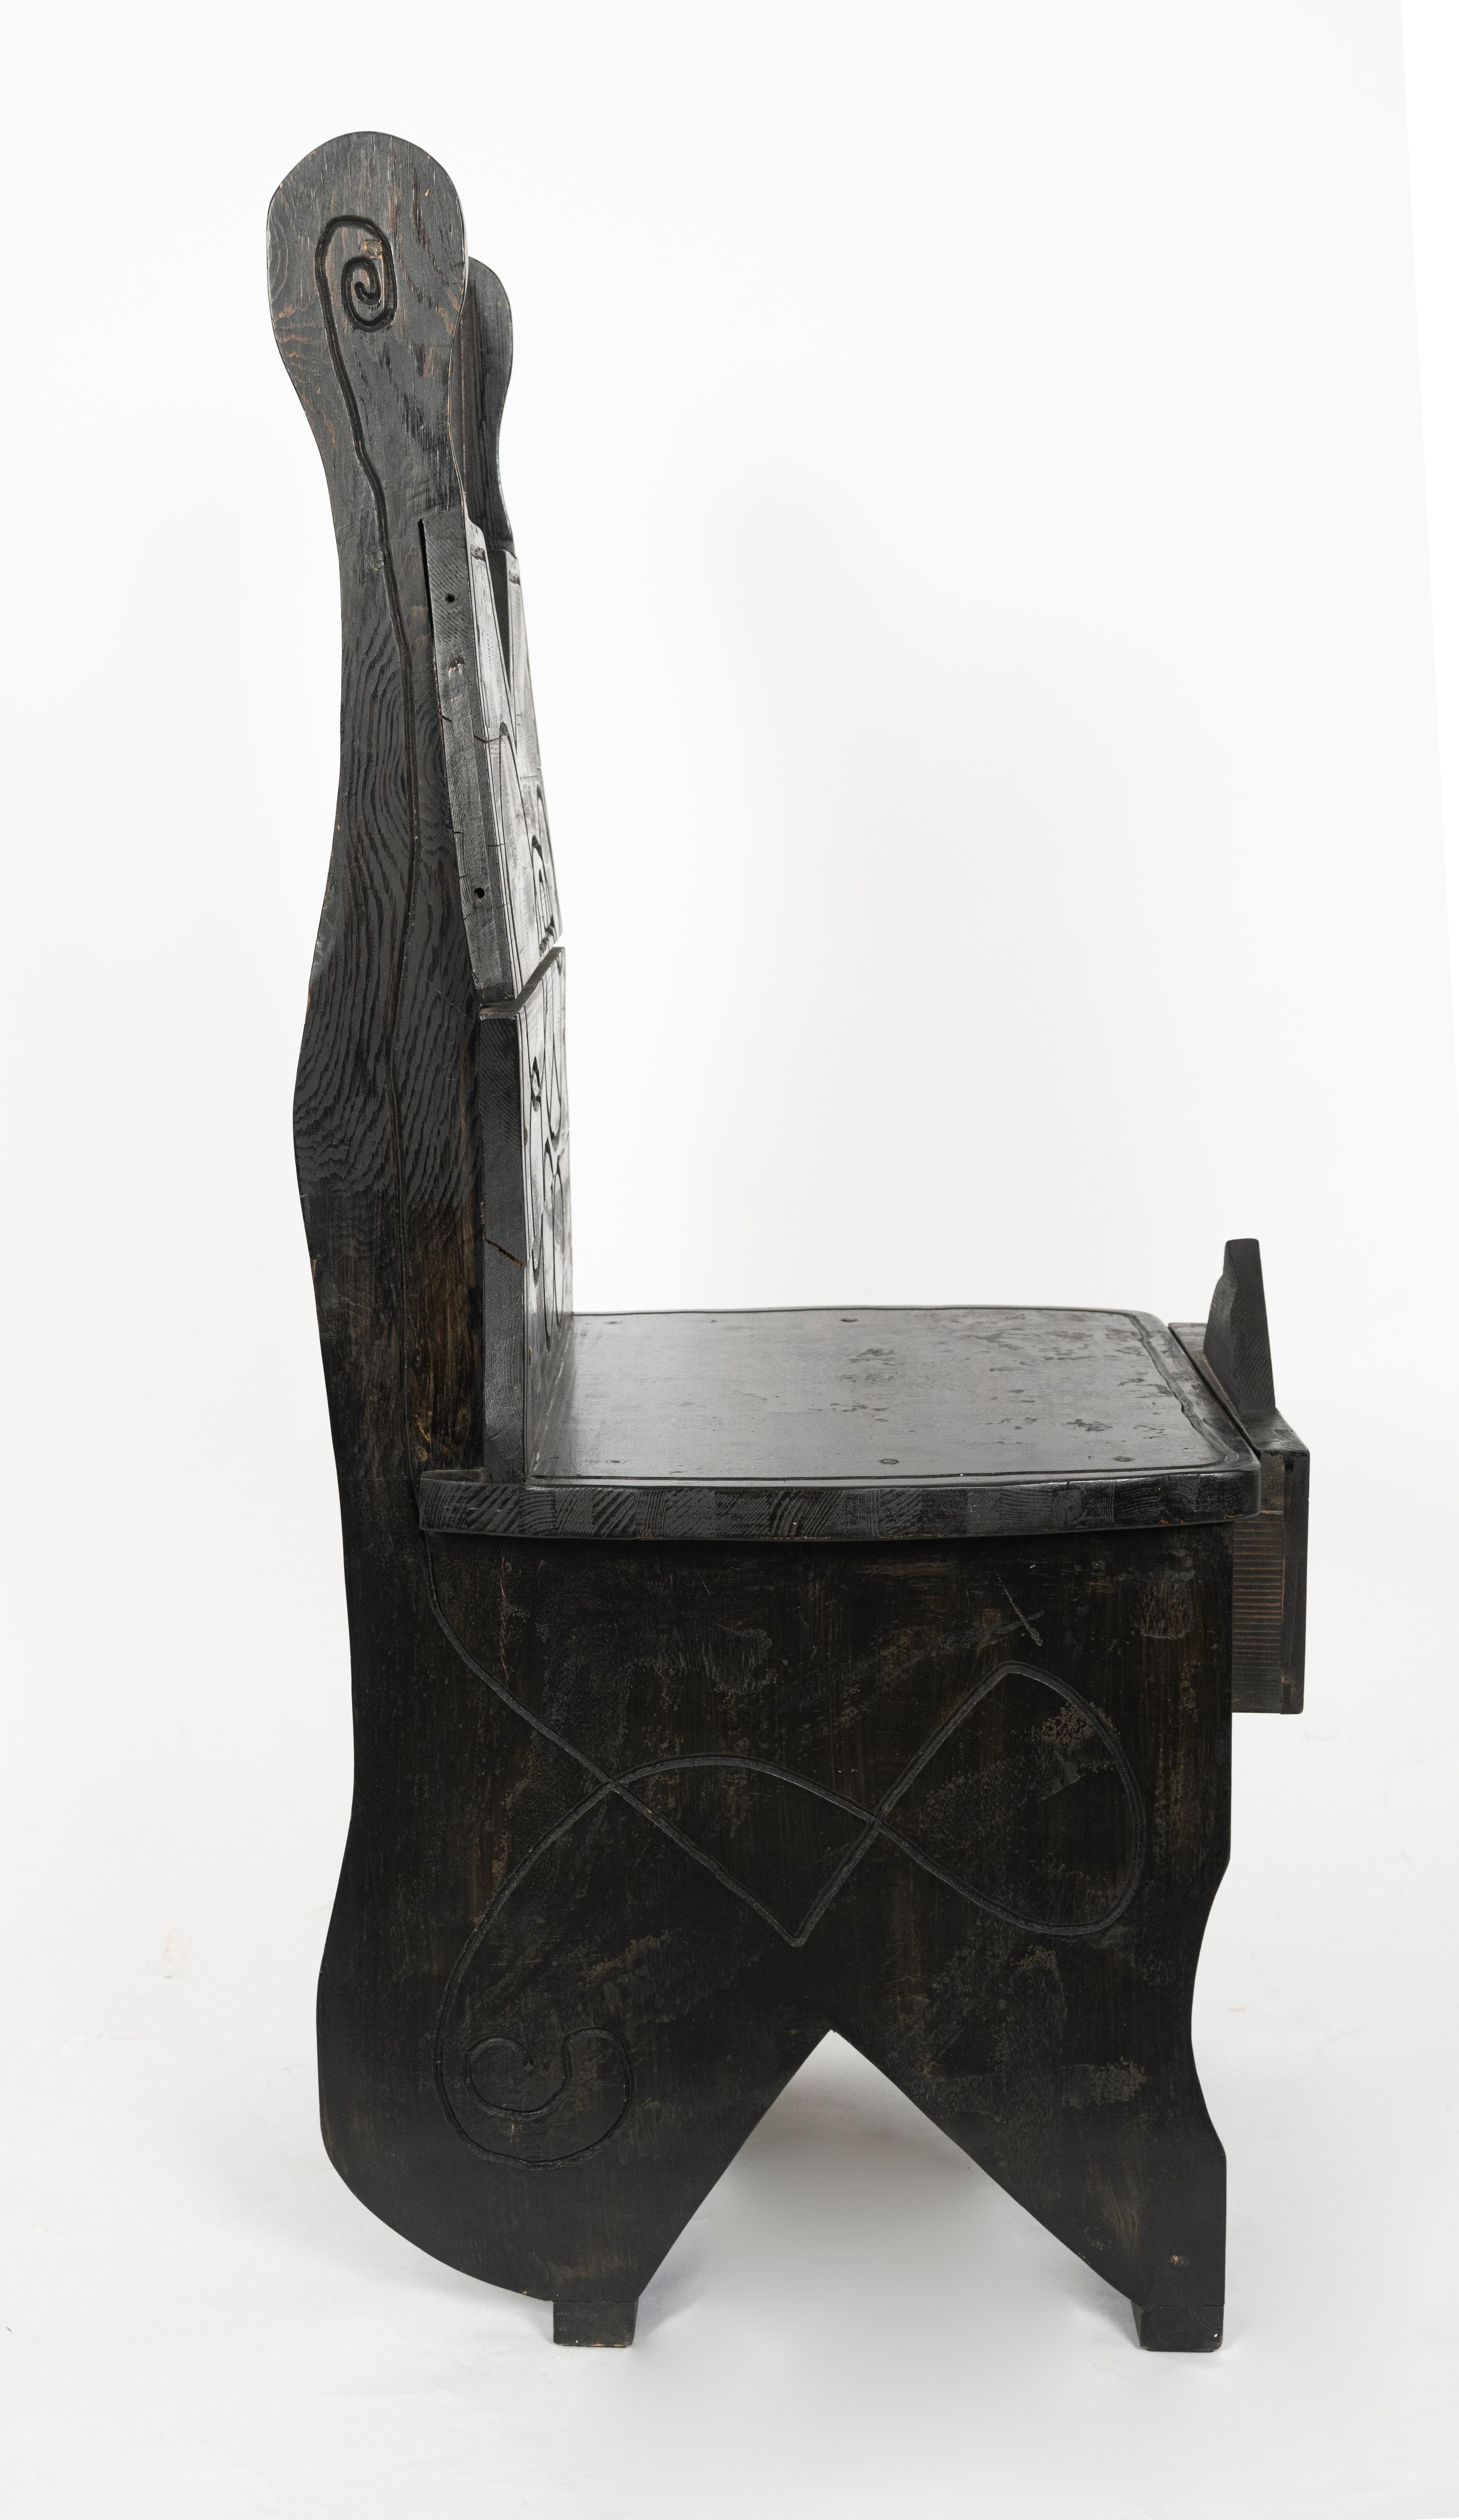 Ensemble bureau et chaise de style cubiste tchèque en chêne ébonisé avec détails polychromes.

Dimensions supplémentaires :
Le plateau du bureau mesure 28,25